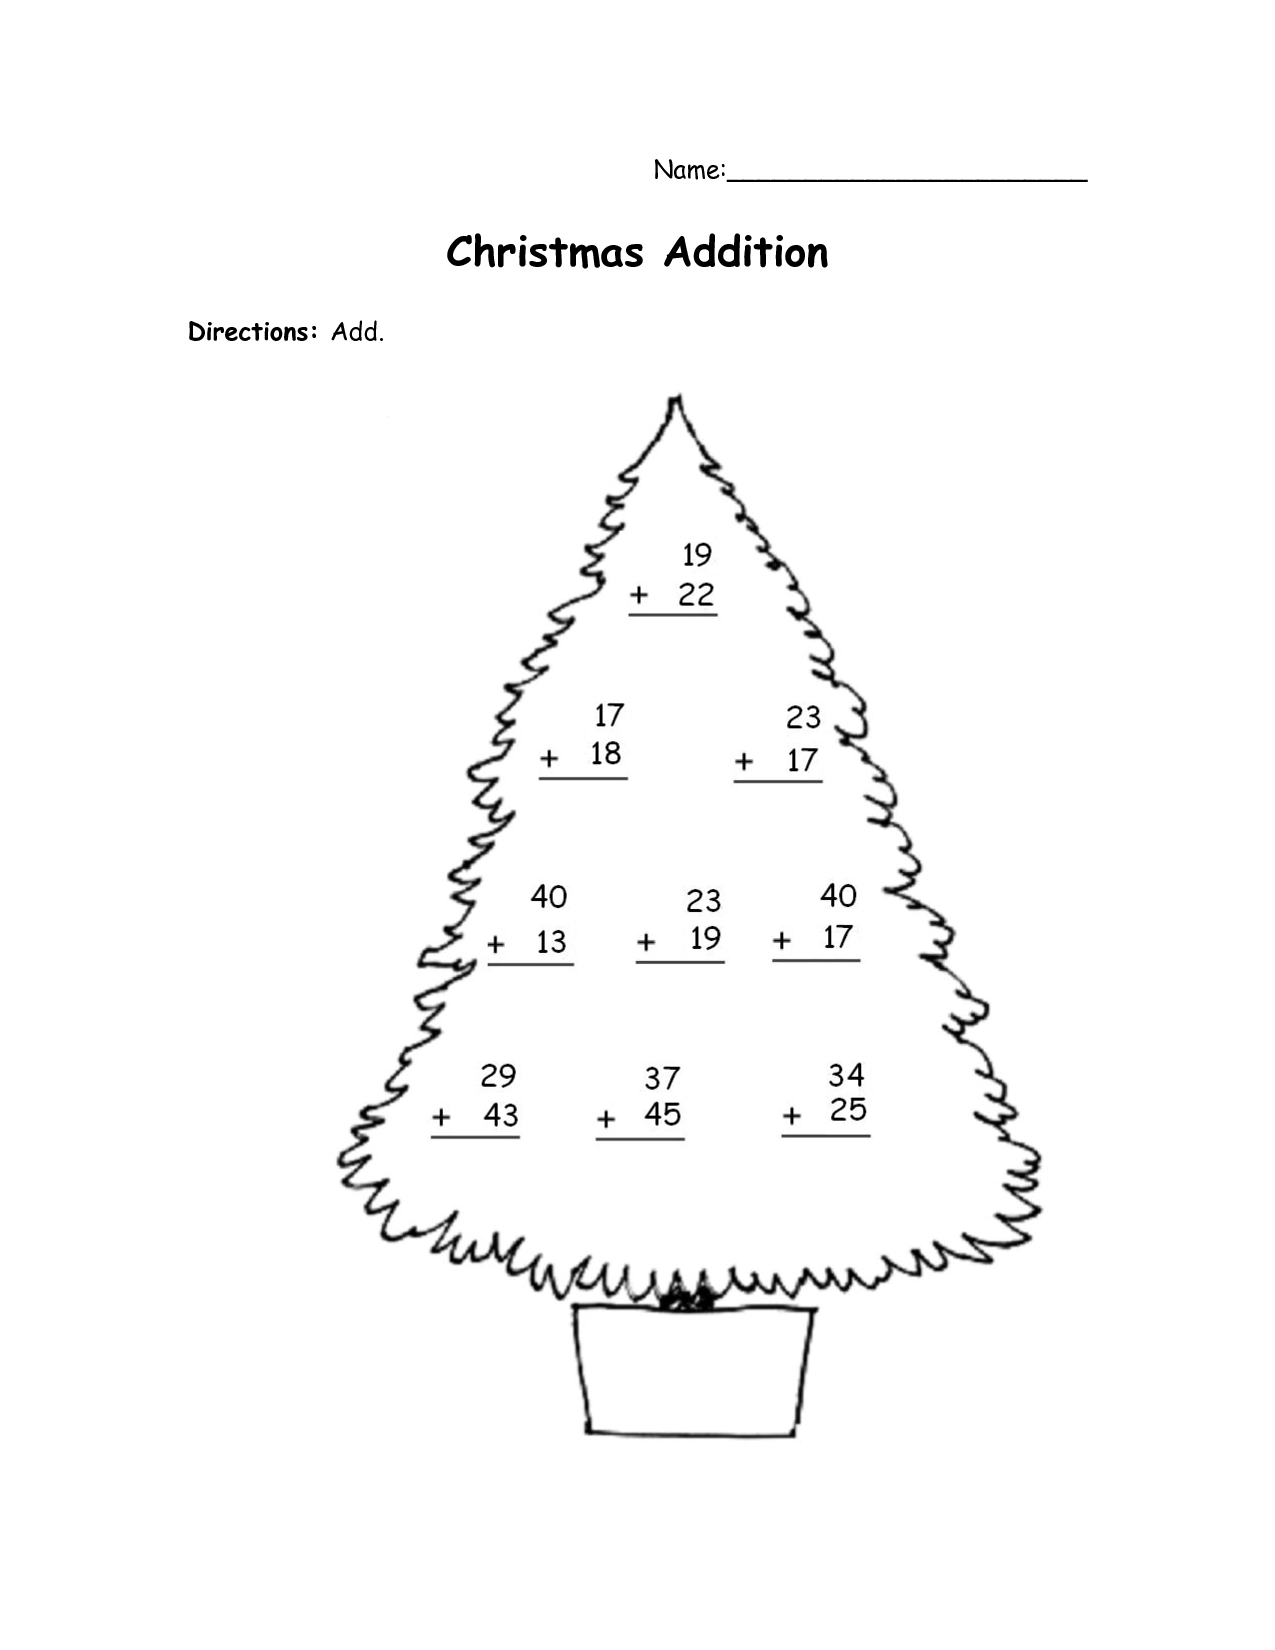 Christmas Tree Addition Worksheet Image